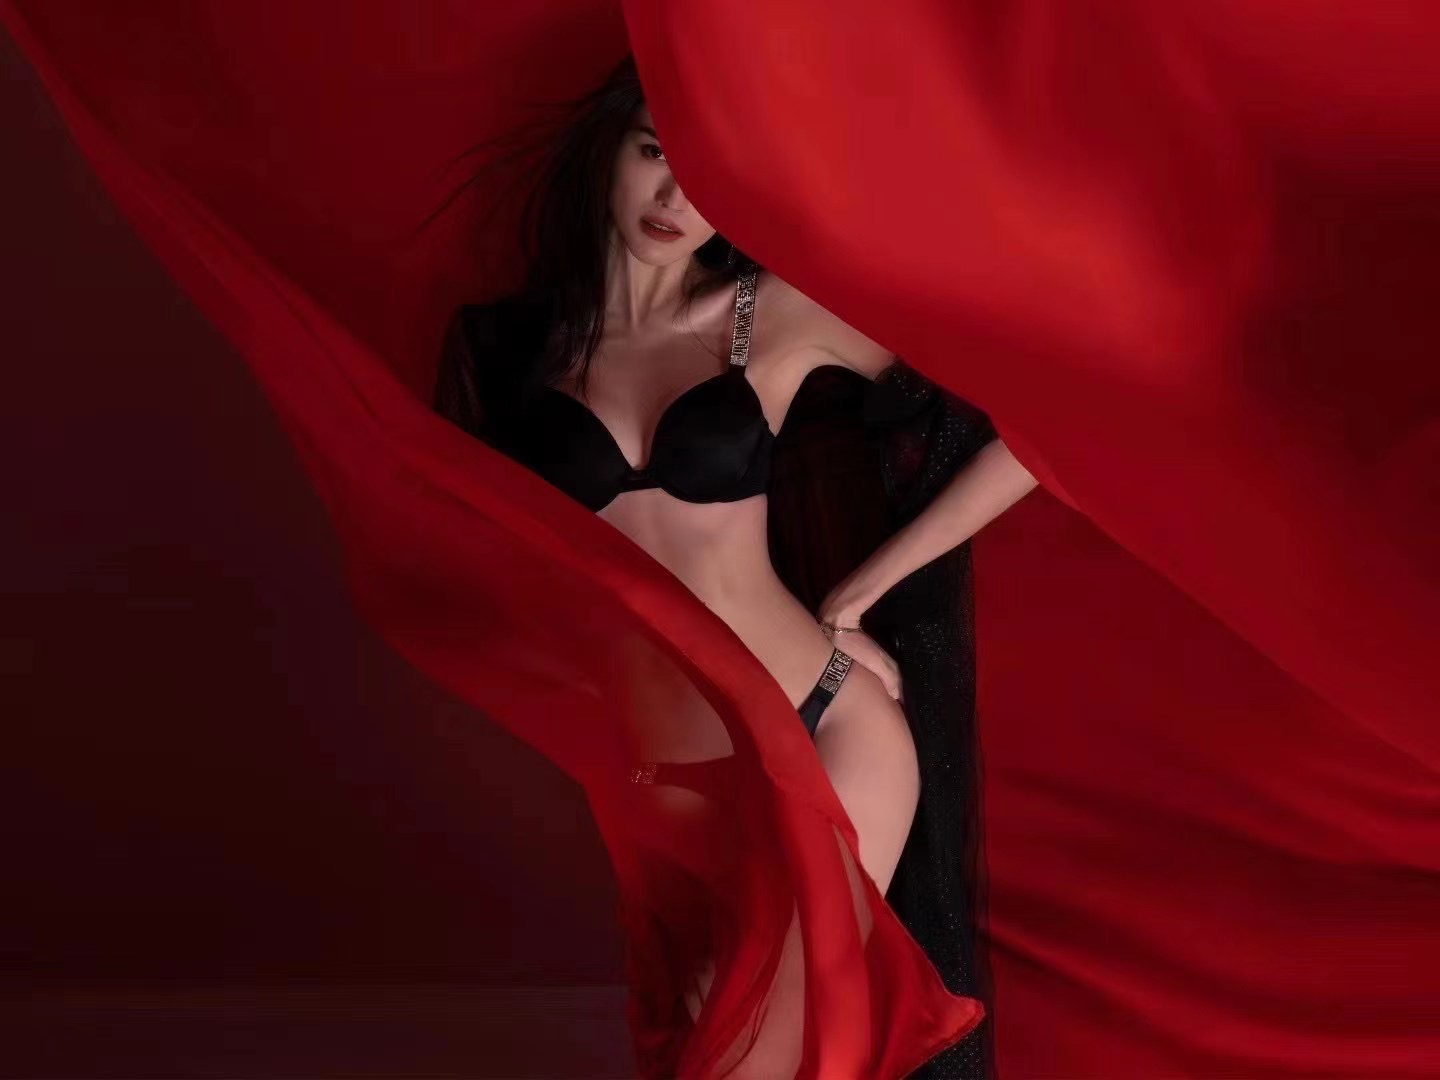 Quảng cáo của Victoria's Secret ngập tràn sắc đỏ mang nghĩa may mắn trong văn hóa phương Đông.